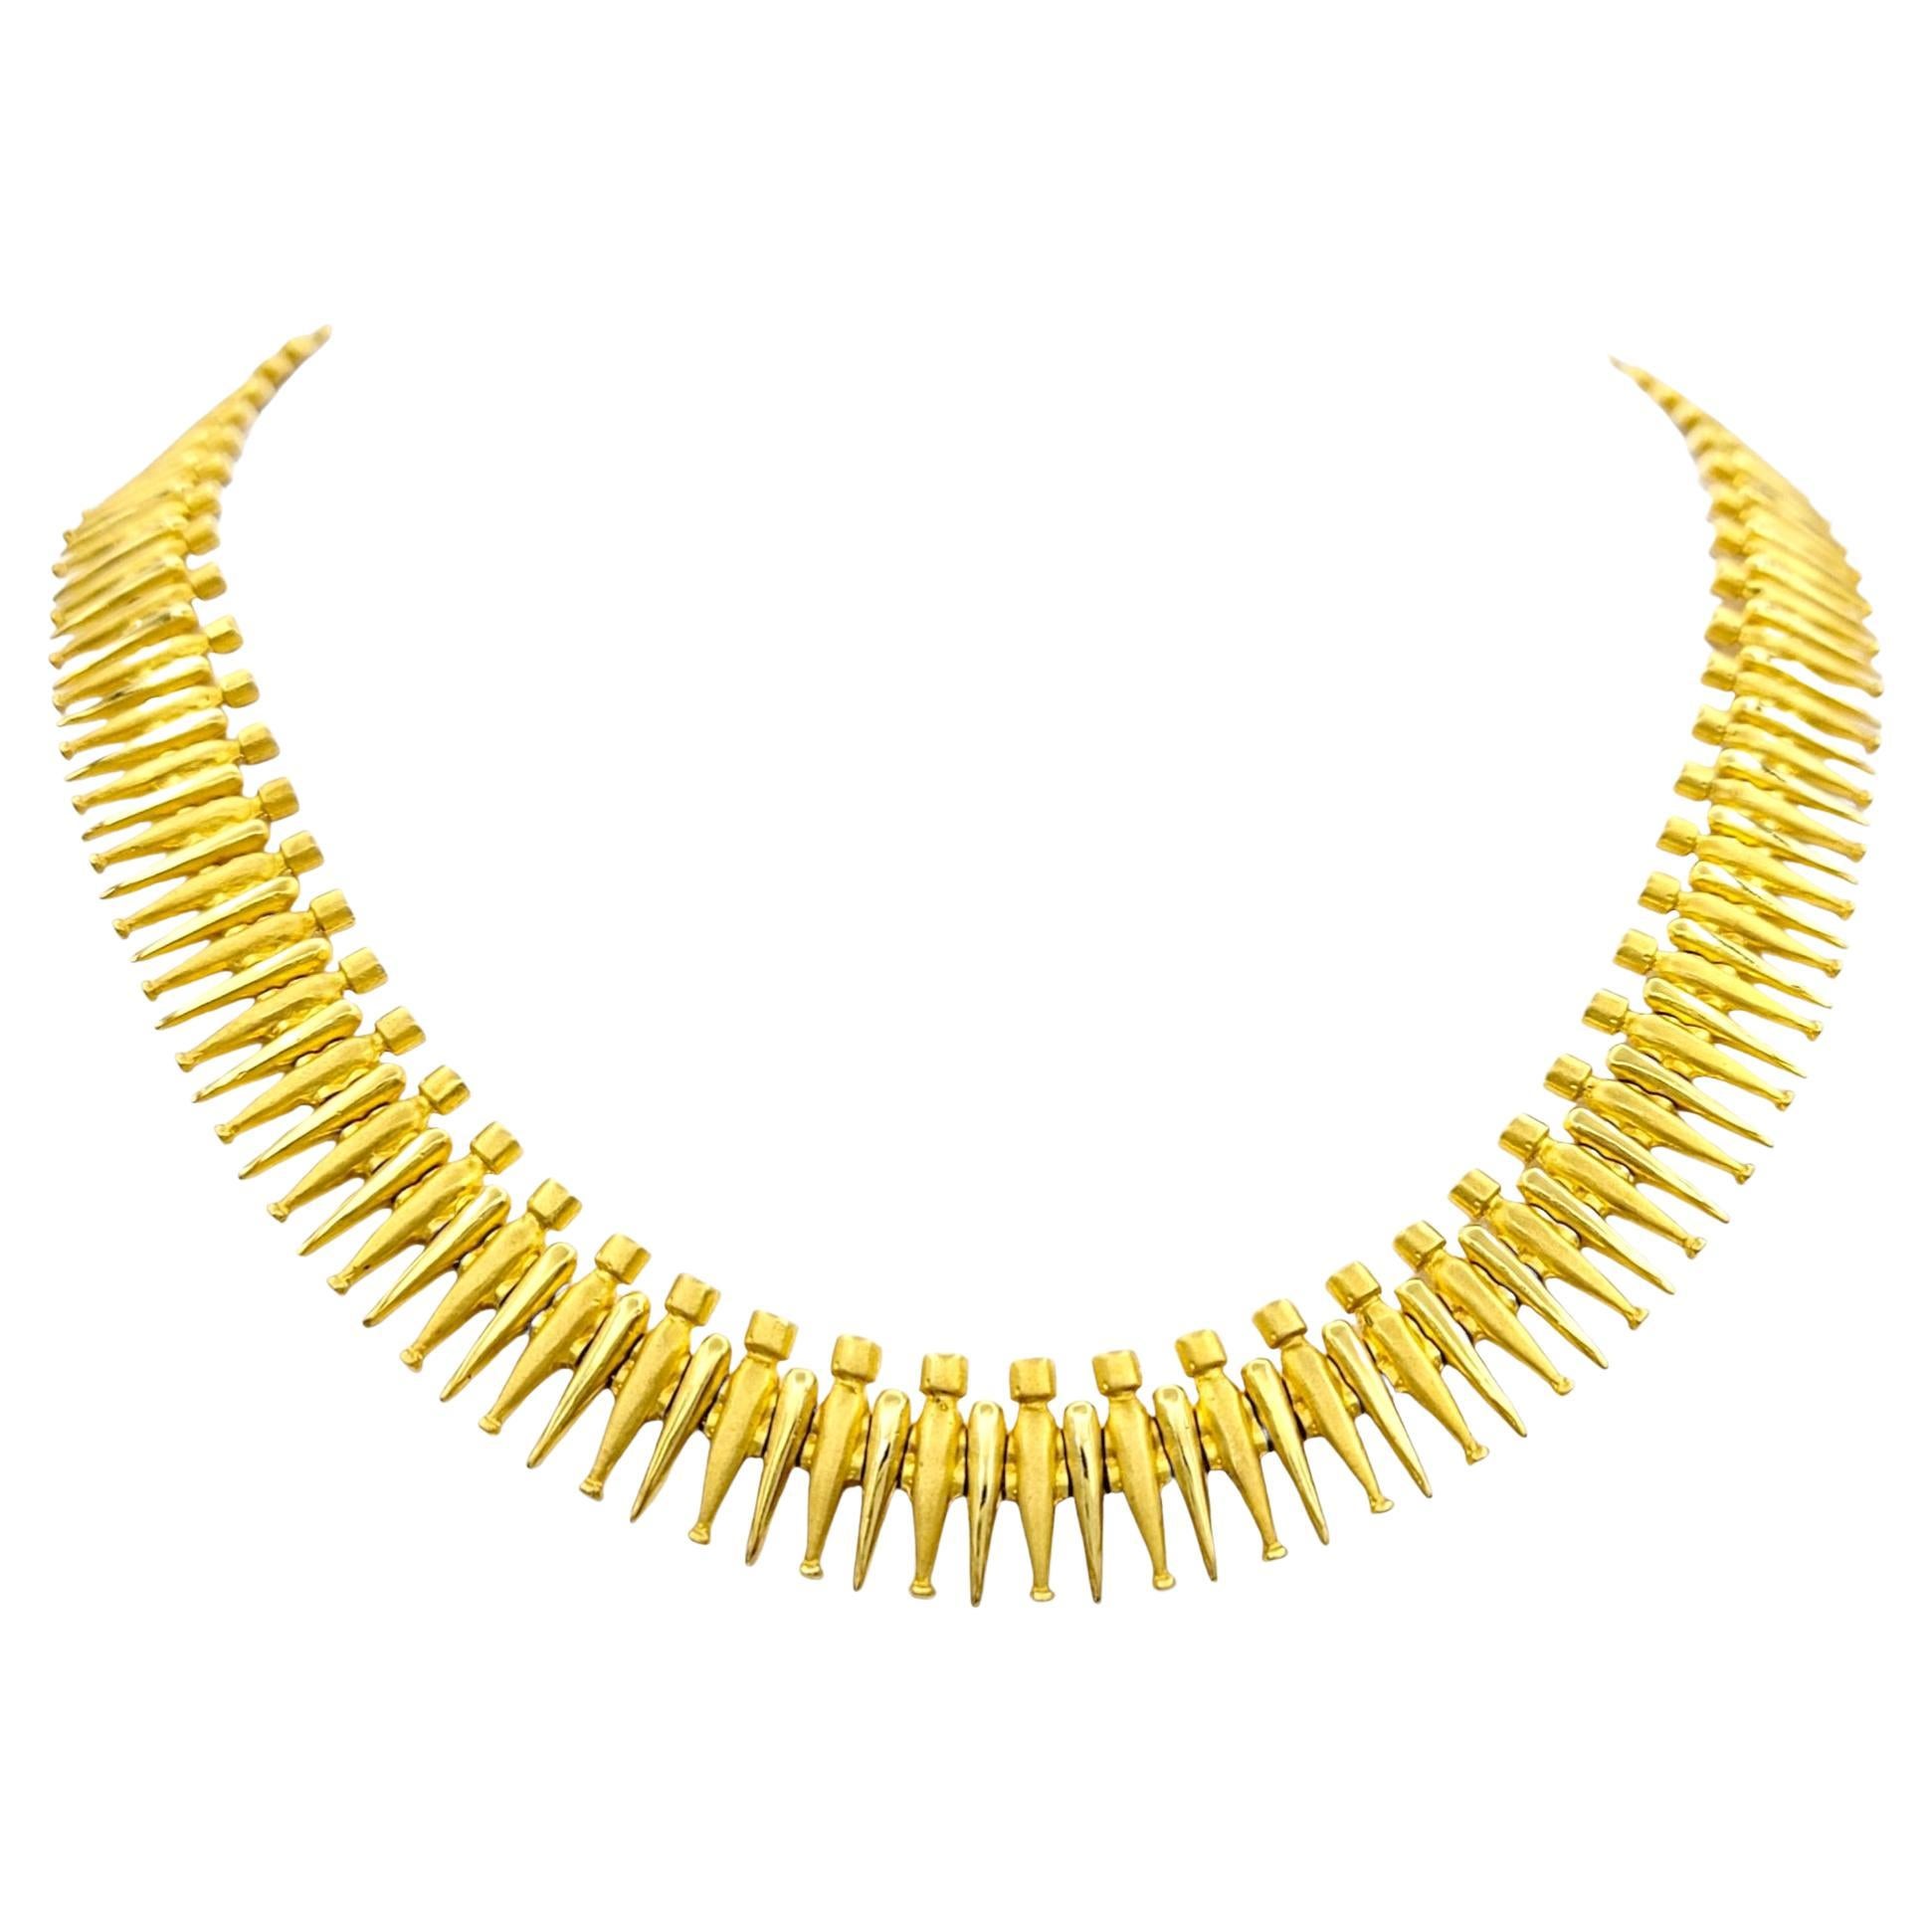 Handgefertigte Statement-Halskette aus 18 Karat Gelbgold mit gesprenkeltem schwerem Kragen